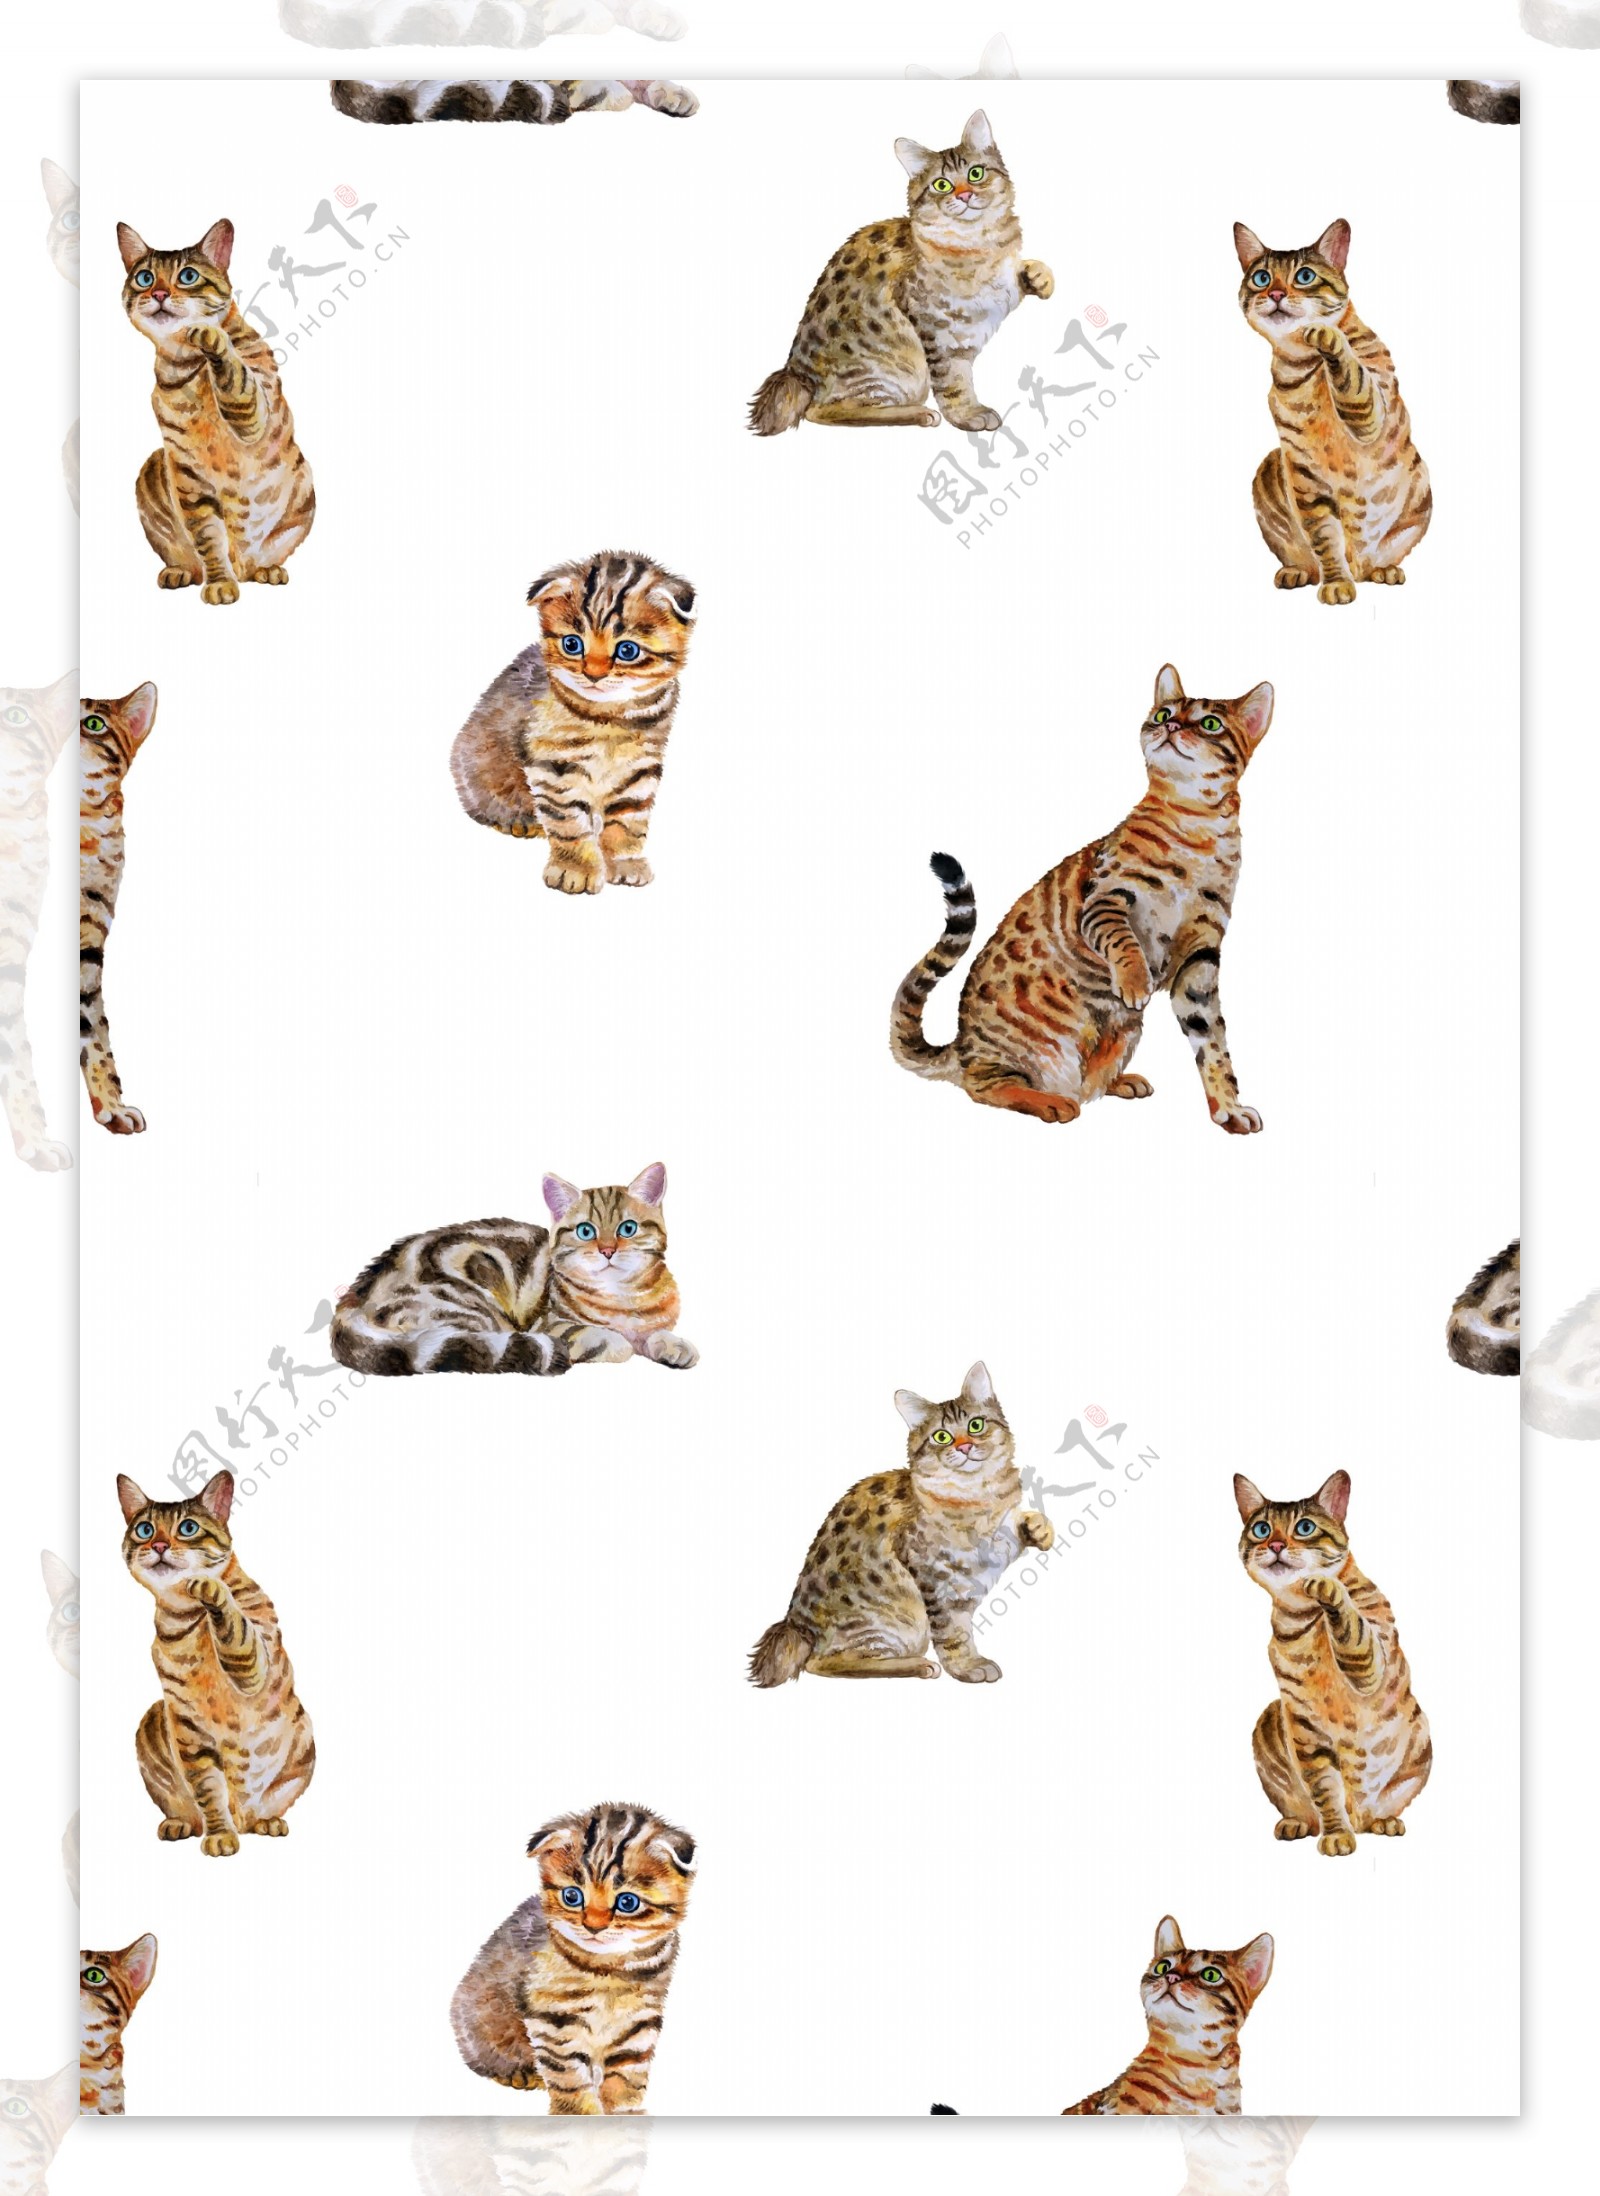 猫图案下载猫分层素材下载